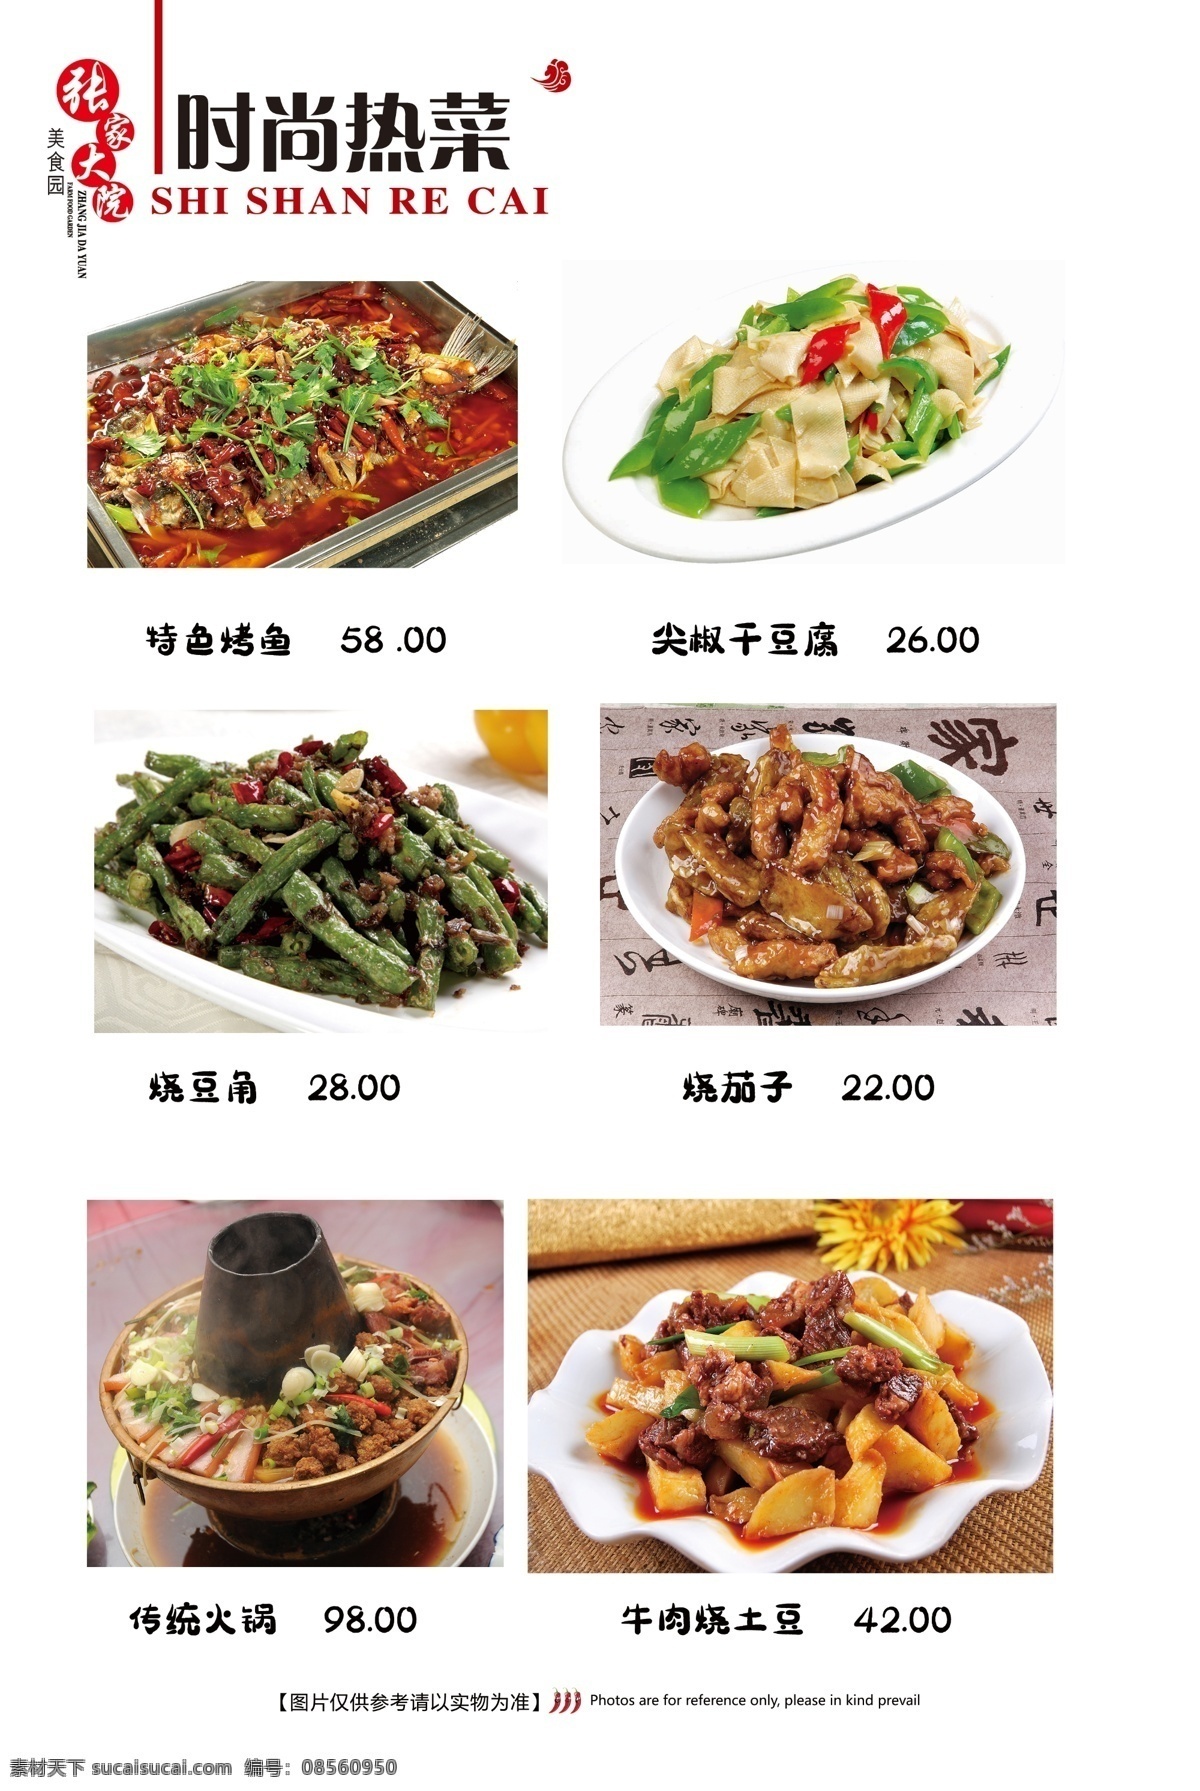 家常炒菜图片 热菜 炒菜 鱼 烤鱼 豆角 豆皮 火锅 茄子 菜单菜谱